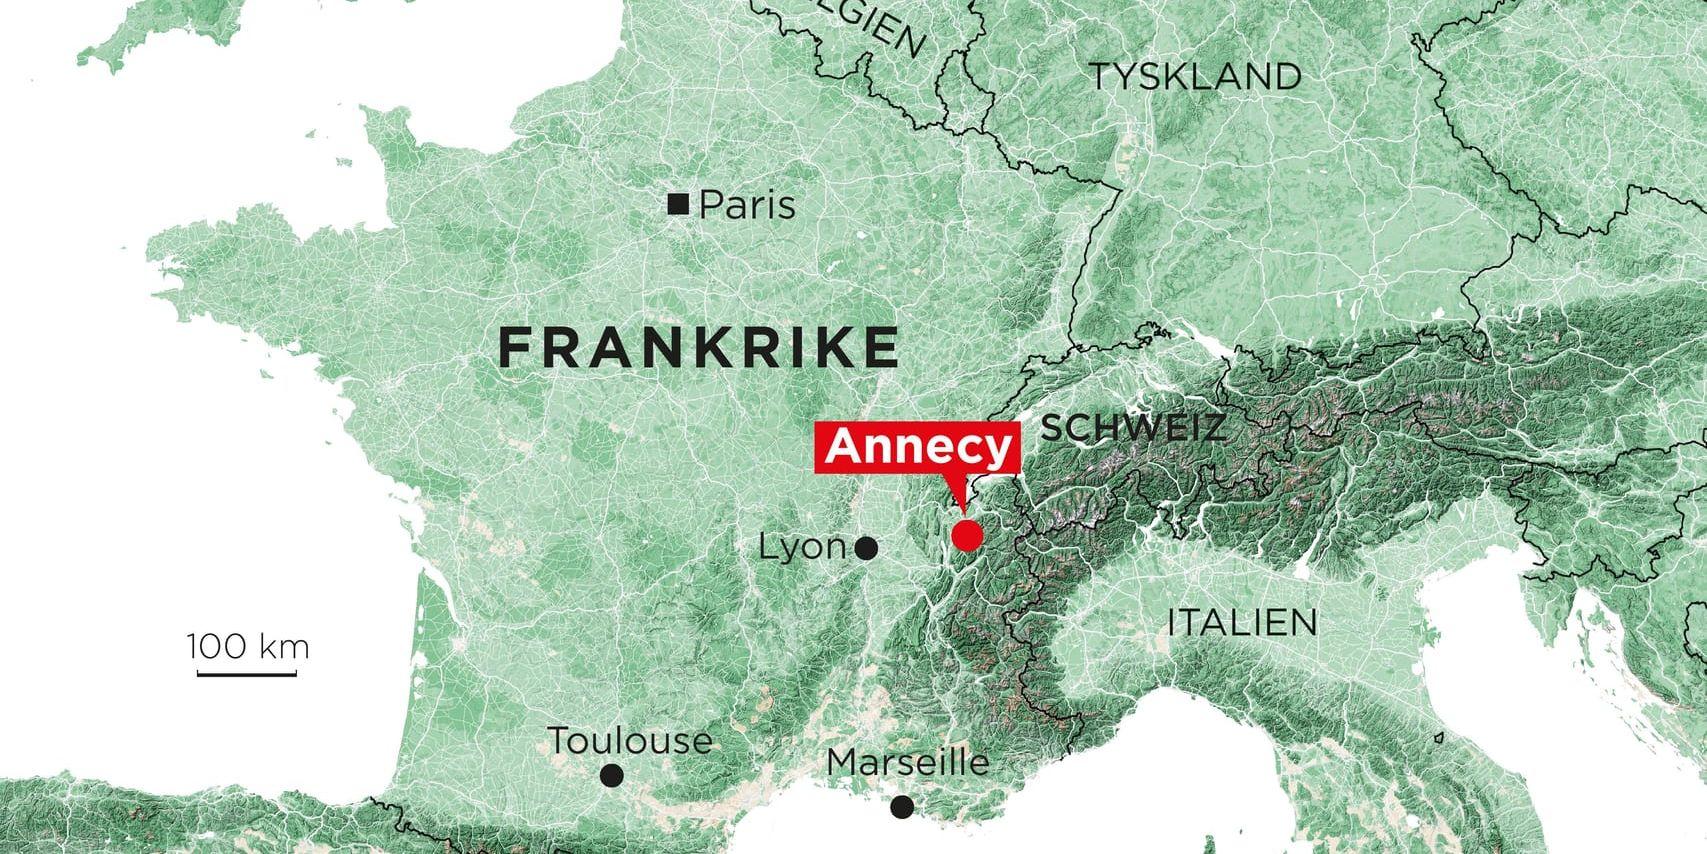 Flera personer, bland dem barn, har skadats i ett knivdåd i franska staden Annecy.